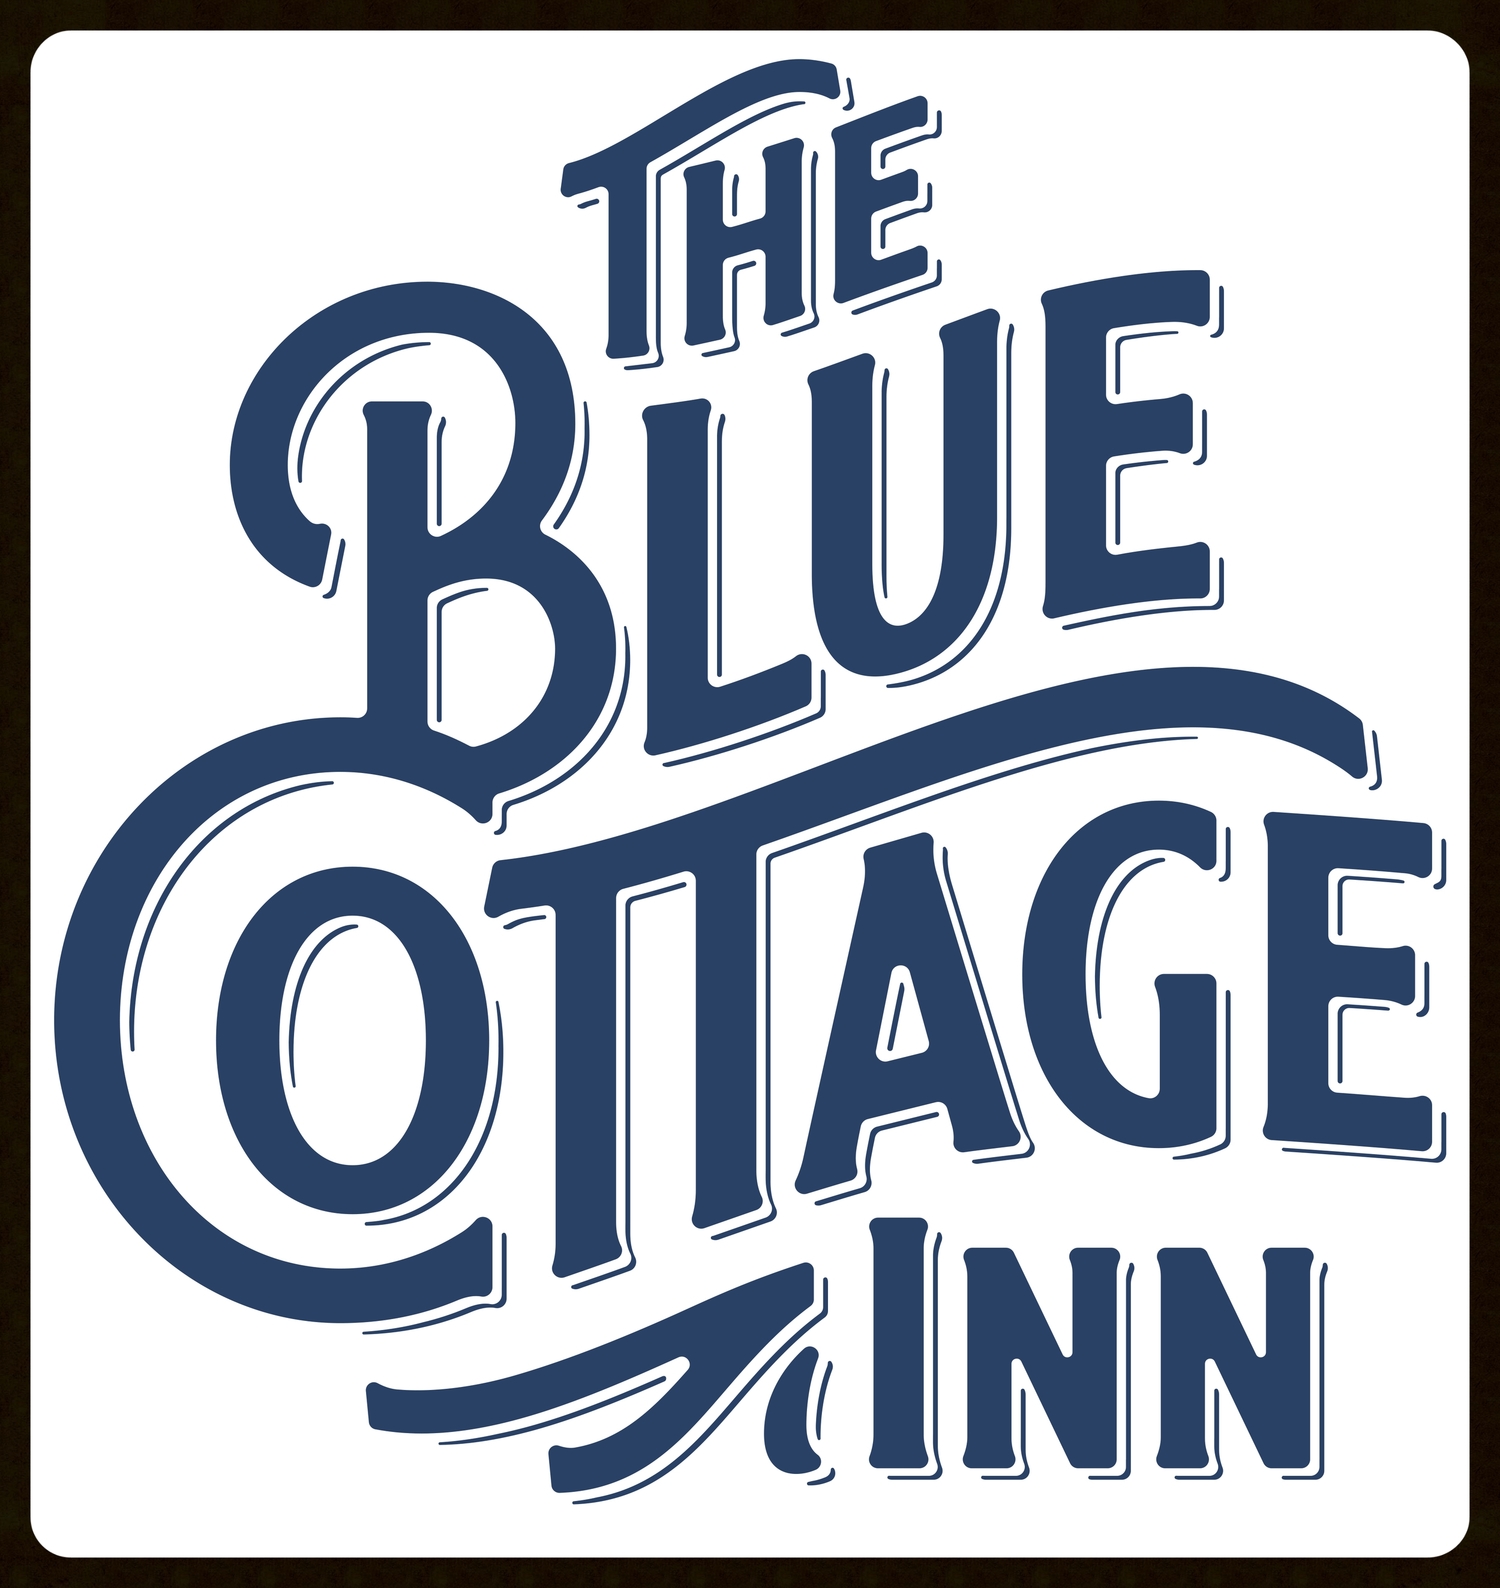 The Blue Cottage Inn 